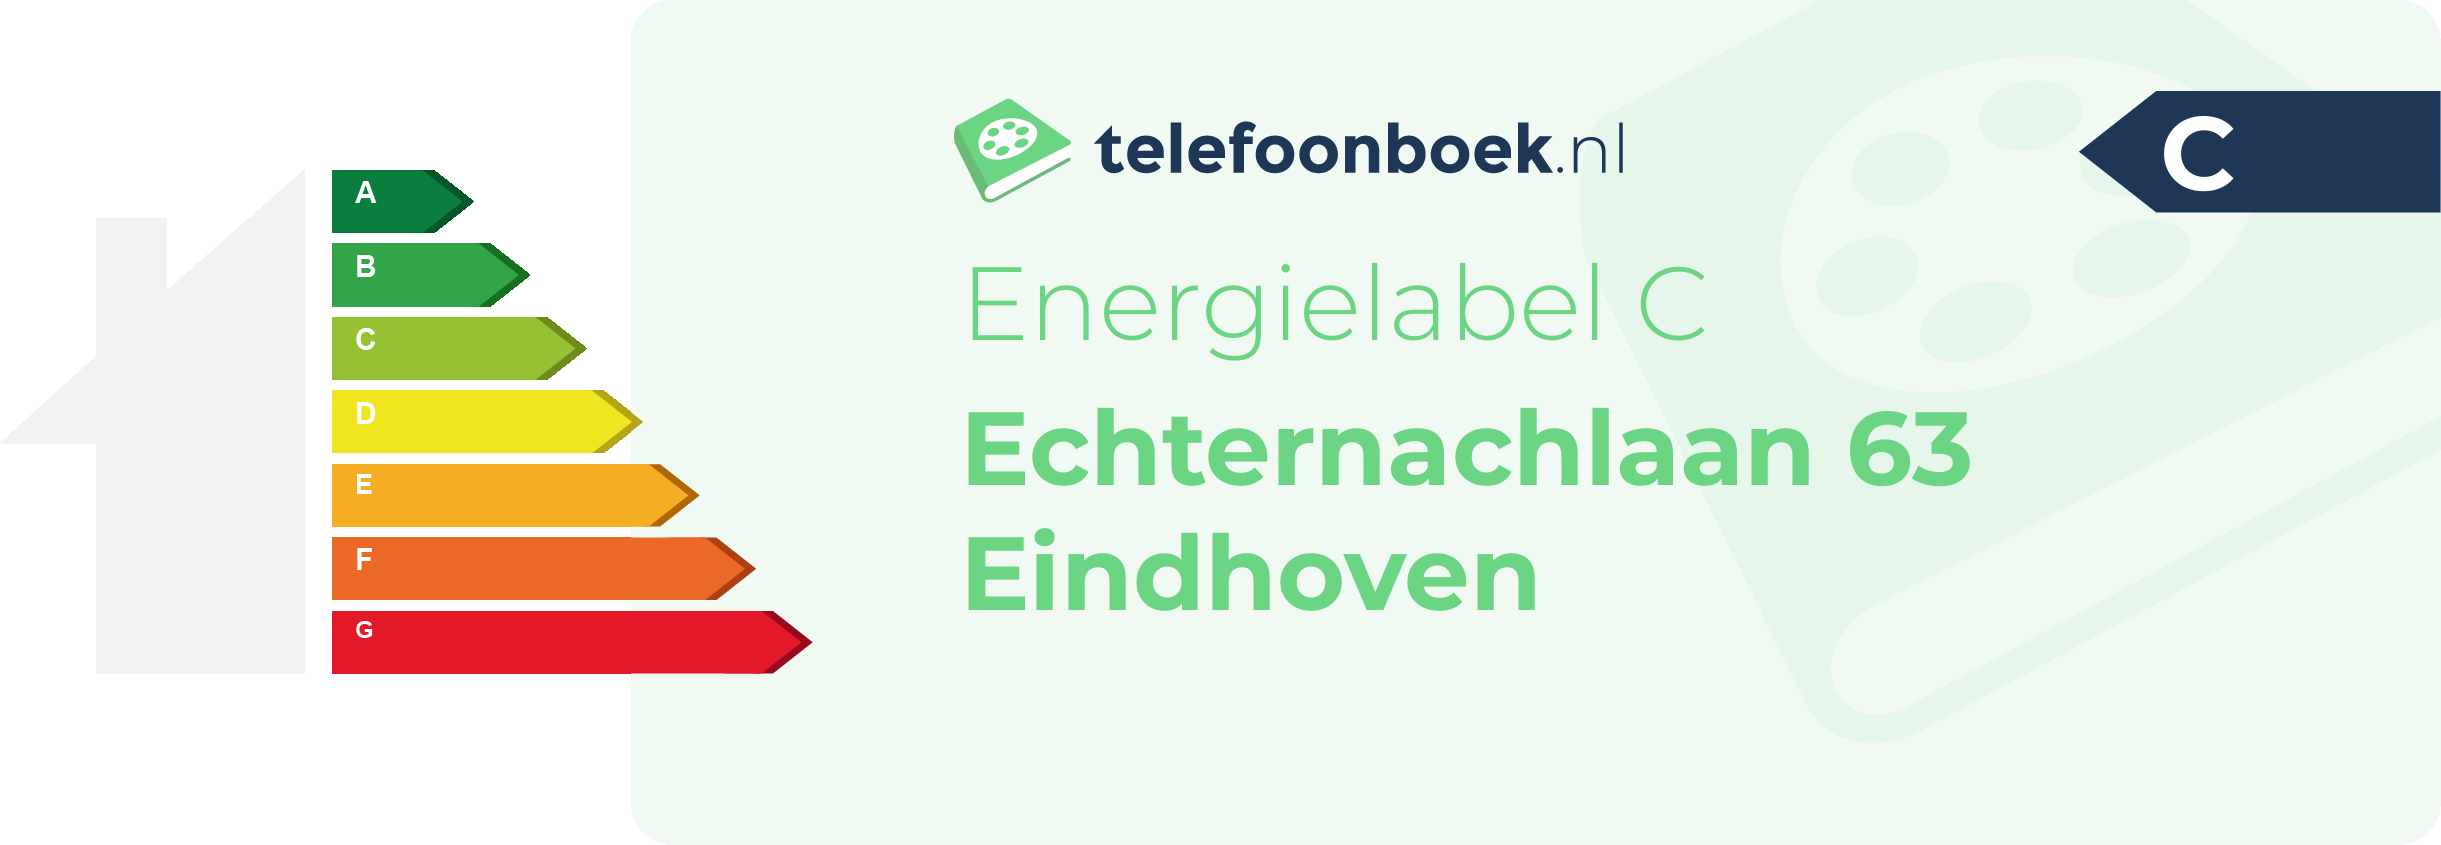 Energielabel Echternachlaan 63 Eindhoven